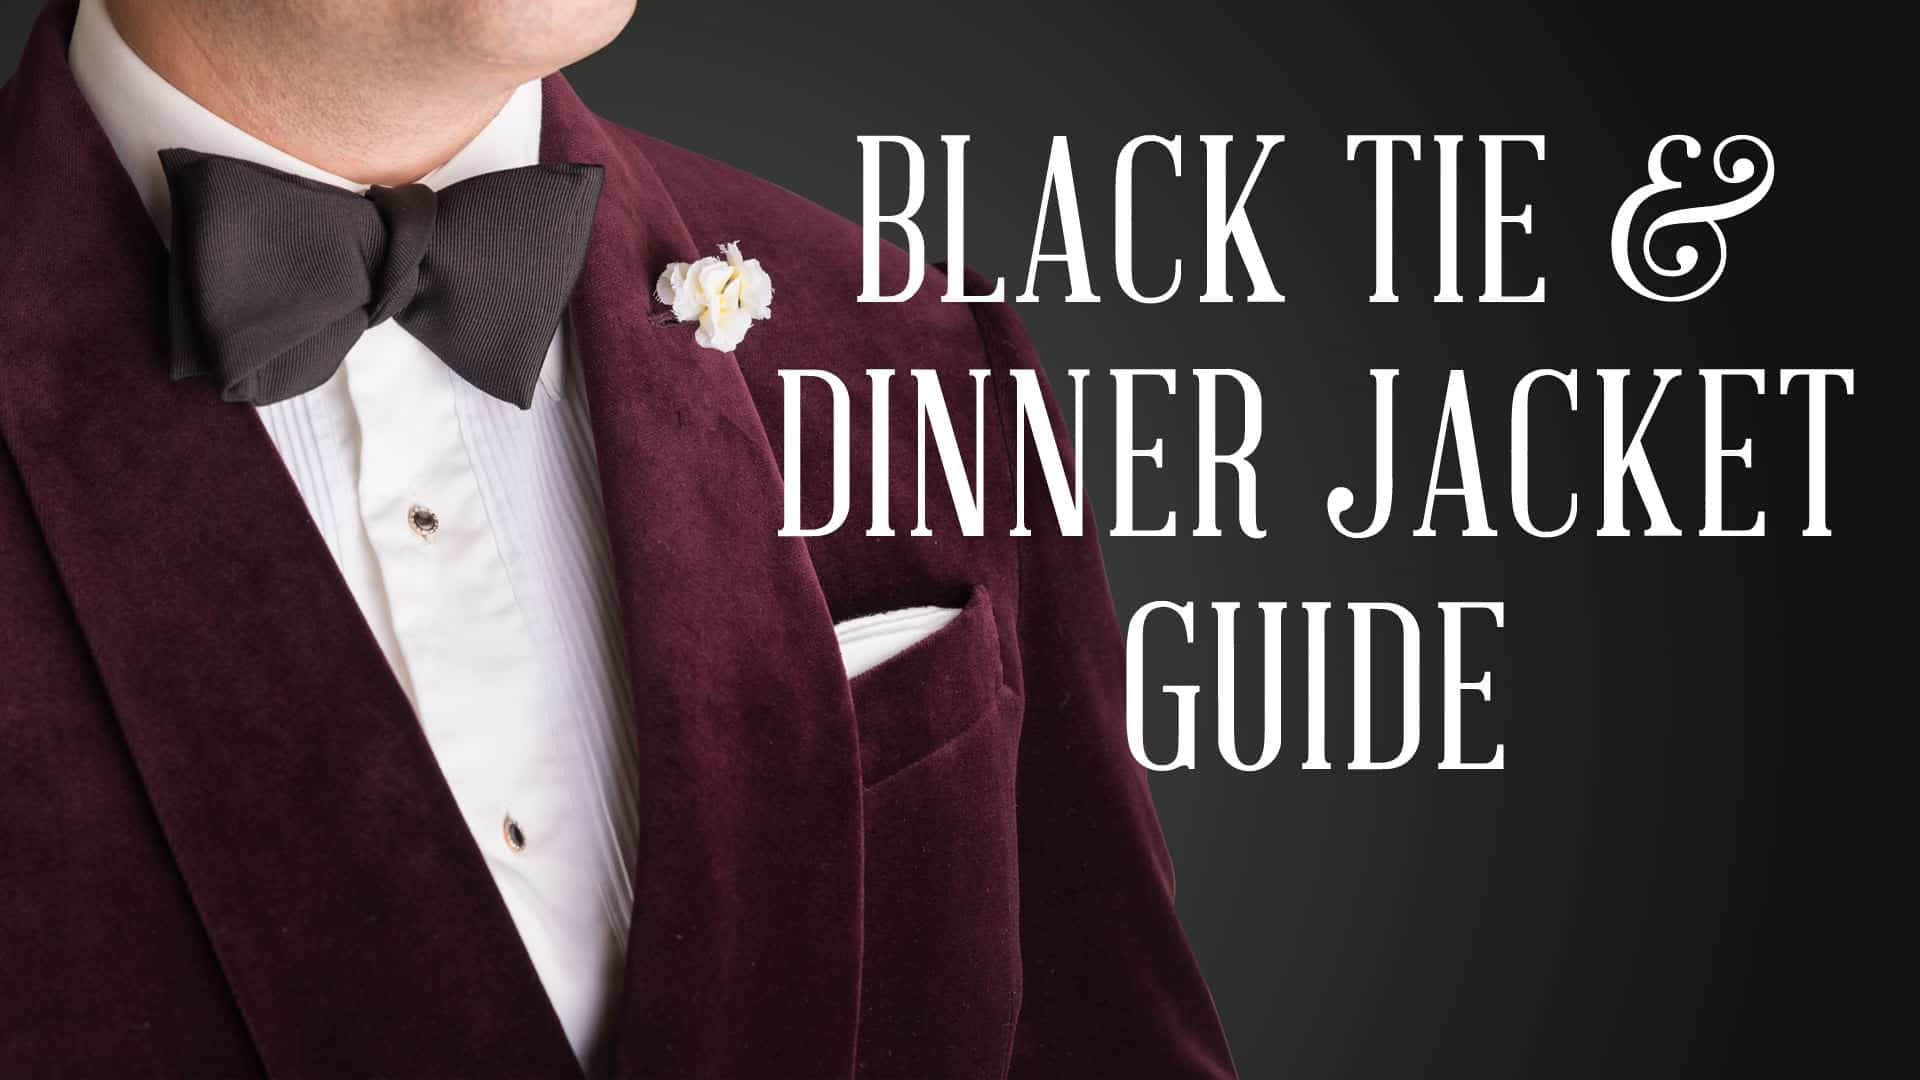 Robert Simon Mens Royal Blue 4 Piece Tuxedo Dinner Suit with Subtle Details